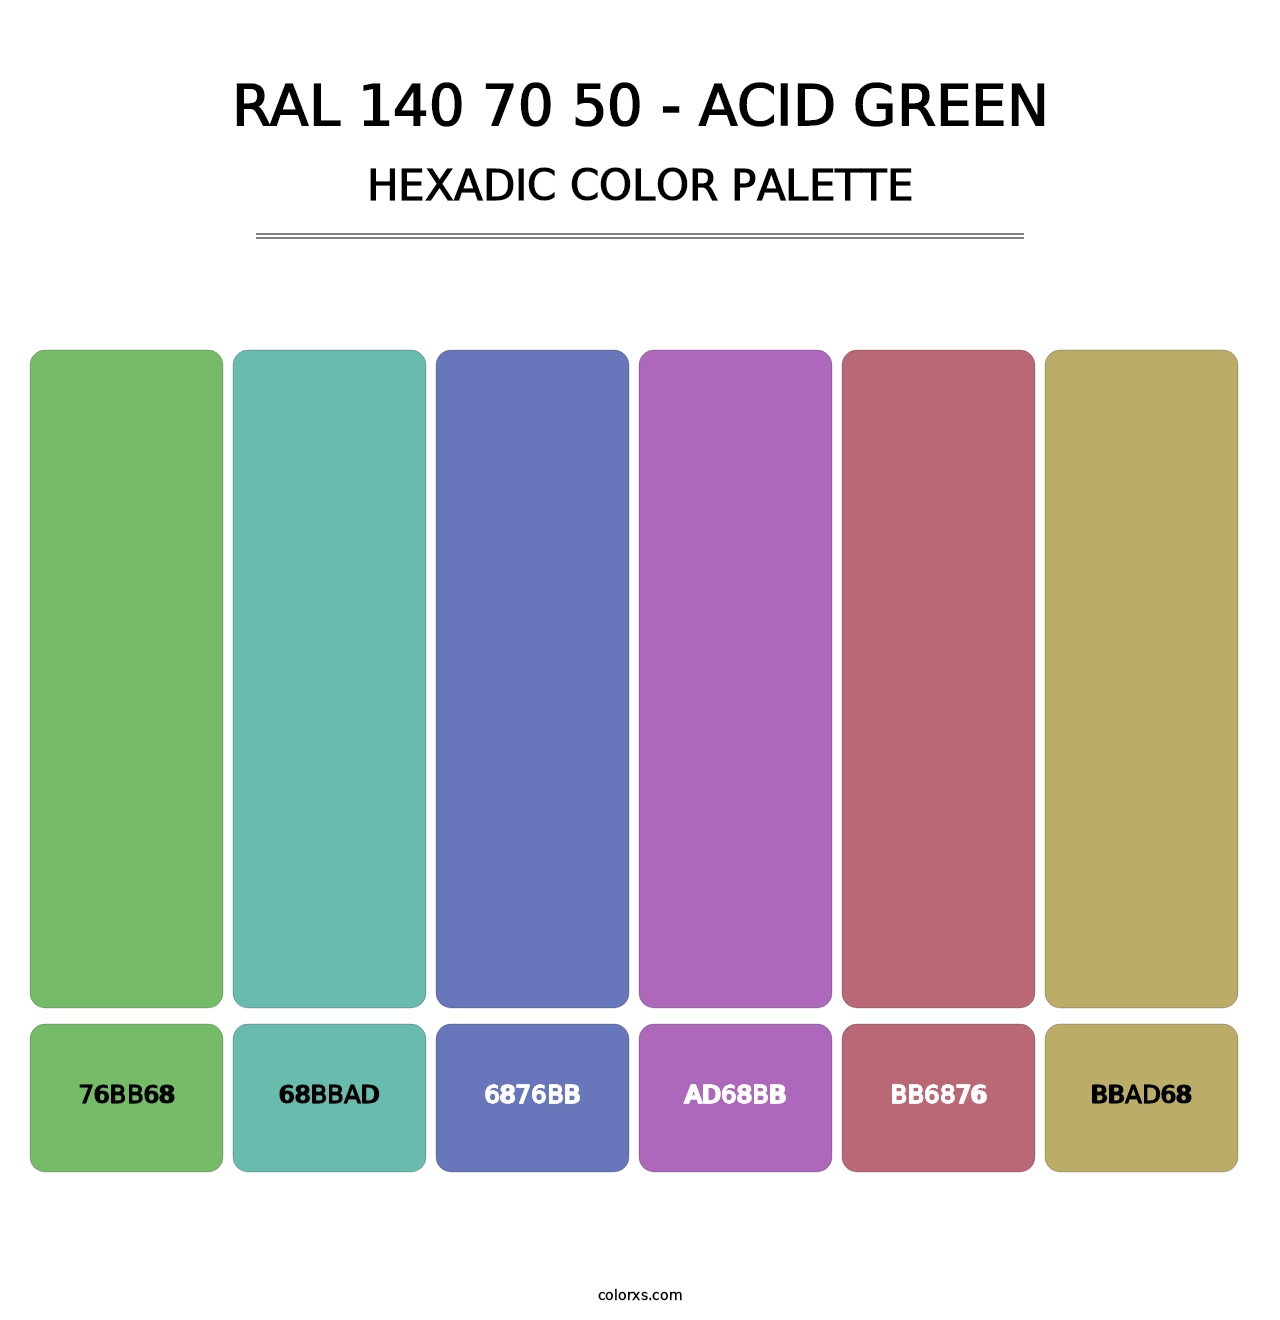 RAL 140 70 50 - Acid Green - Hexadic Color Palette